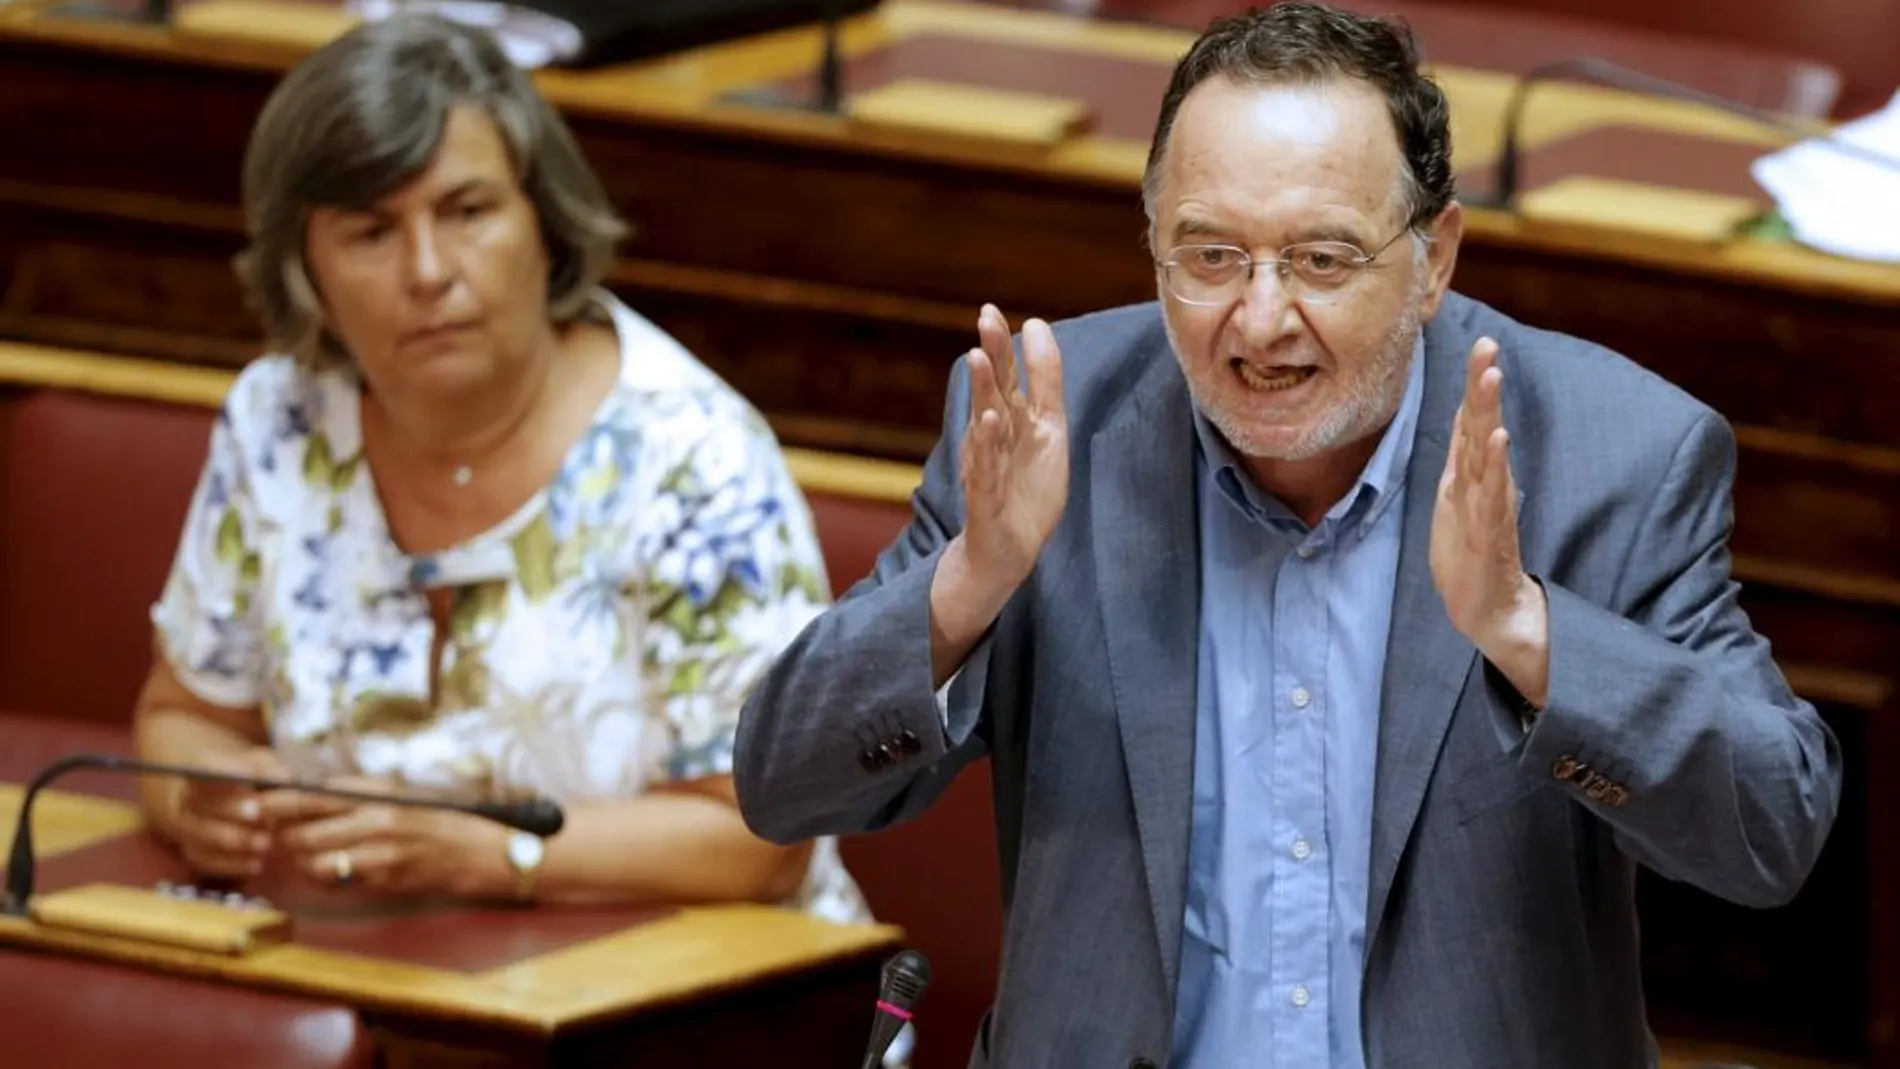 Lafazanis representa el sector crítico de Syriza